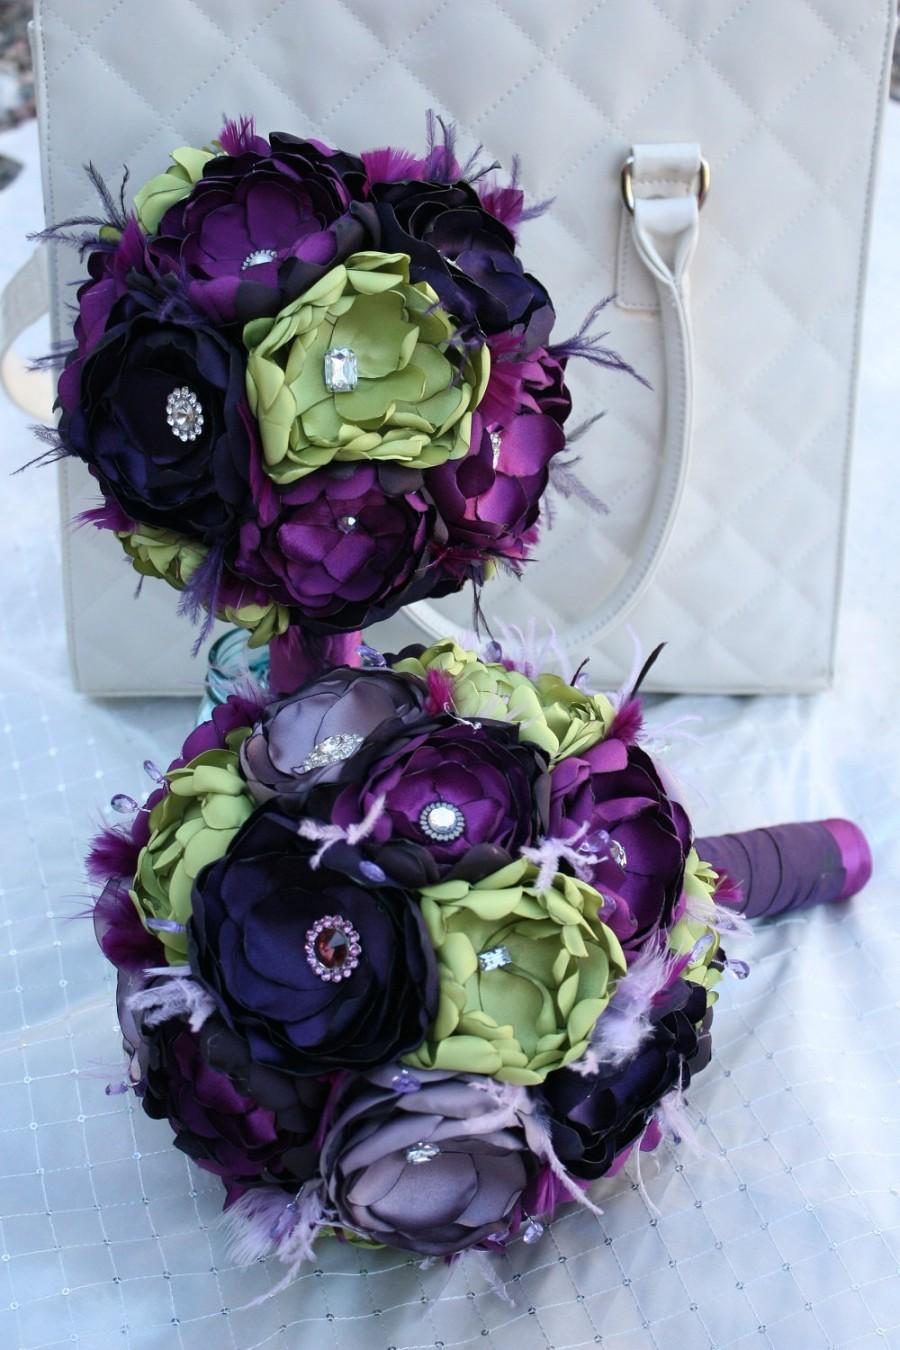 زفاف - Handmade Fabric Flower Wedding Package in Purples and Green - Bridal bouquet - Boutonnieres - Corsages - Brooch bouquet -